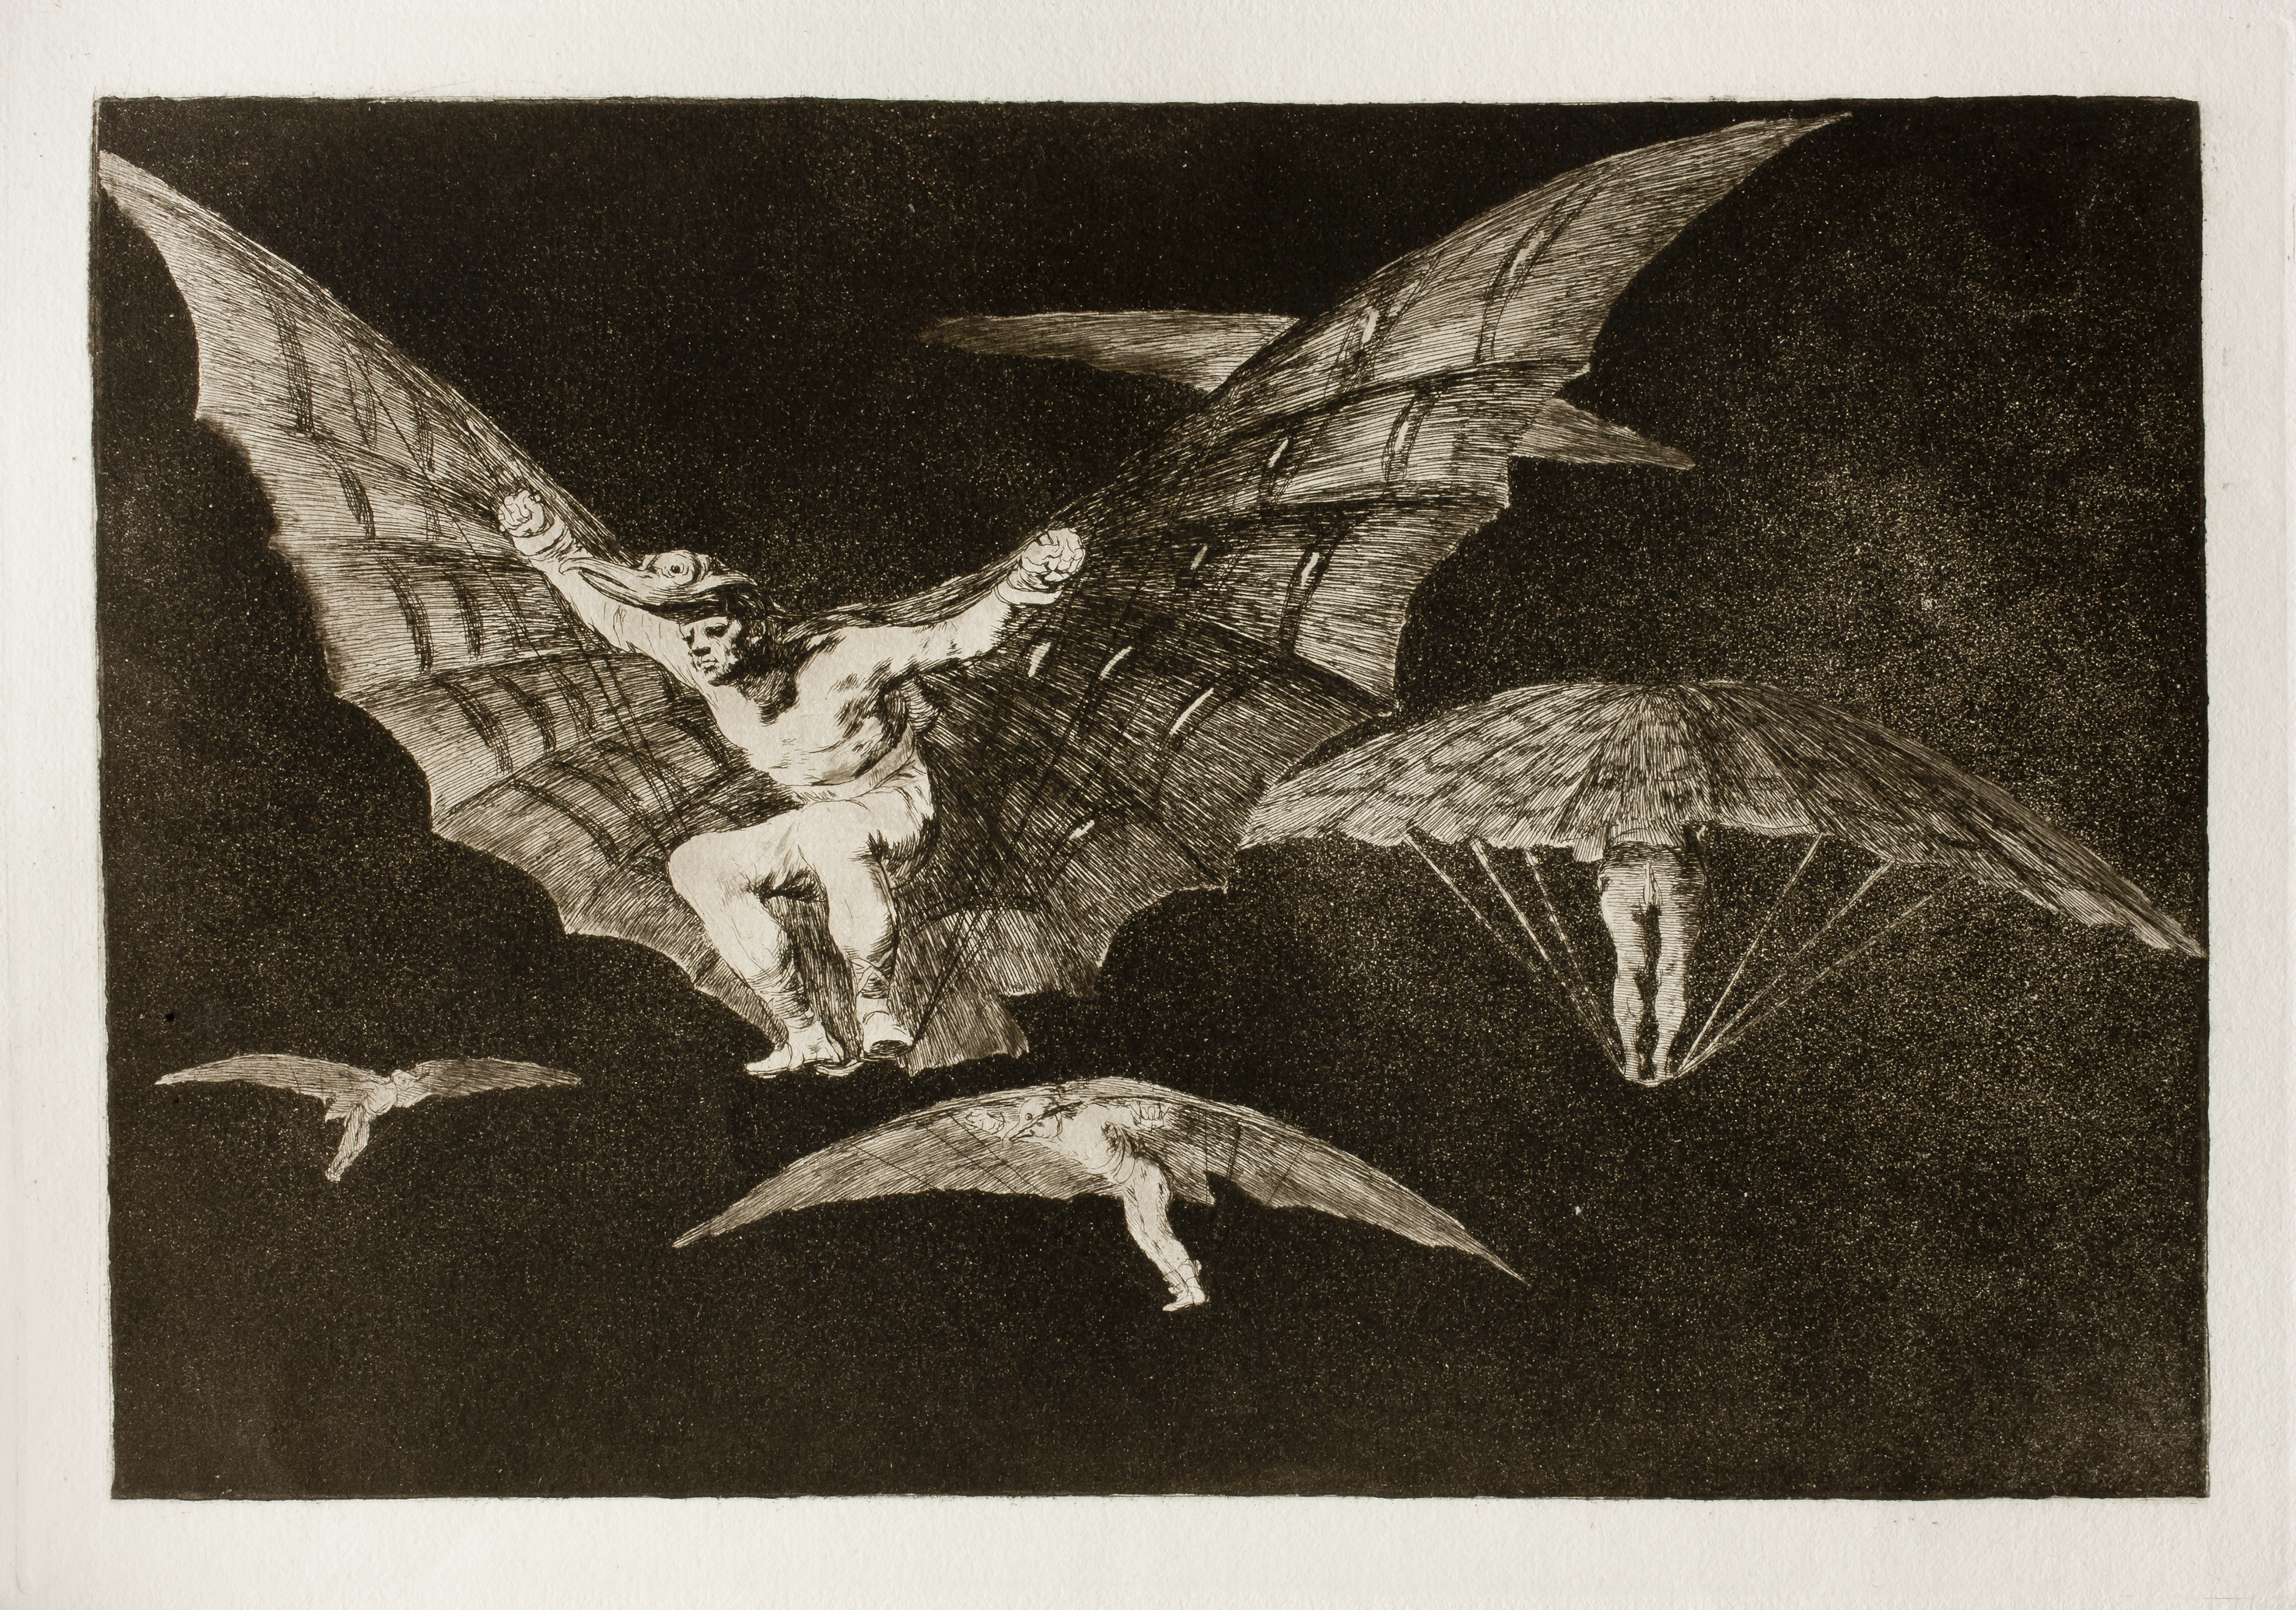 Manière de voler by Francisco Goya - 1823 - 24.7 x 35.9 cm collection privée